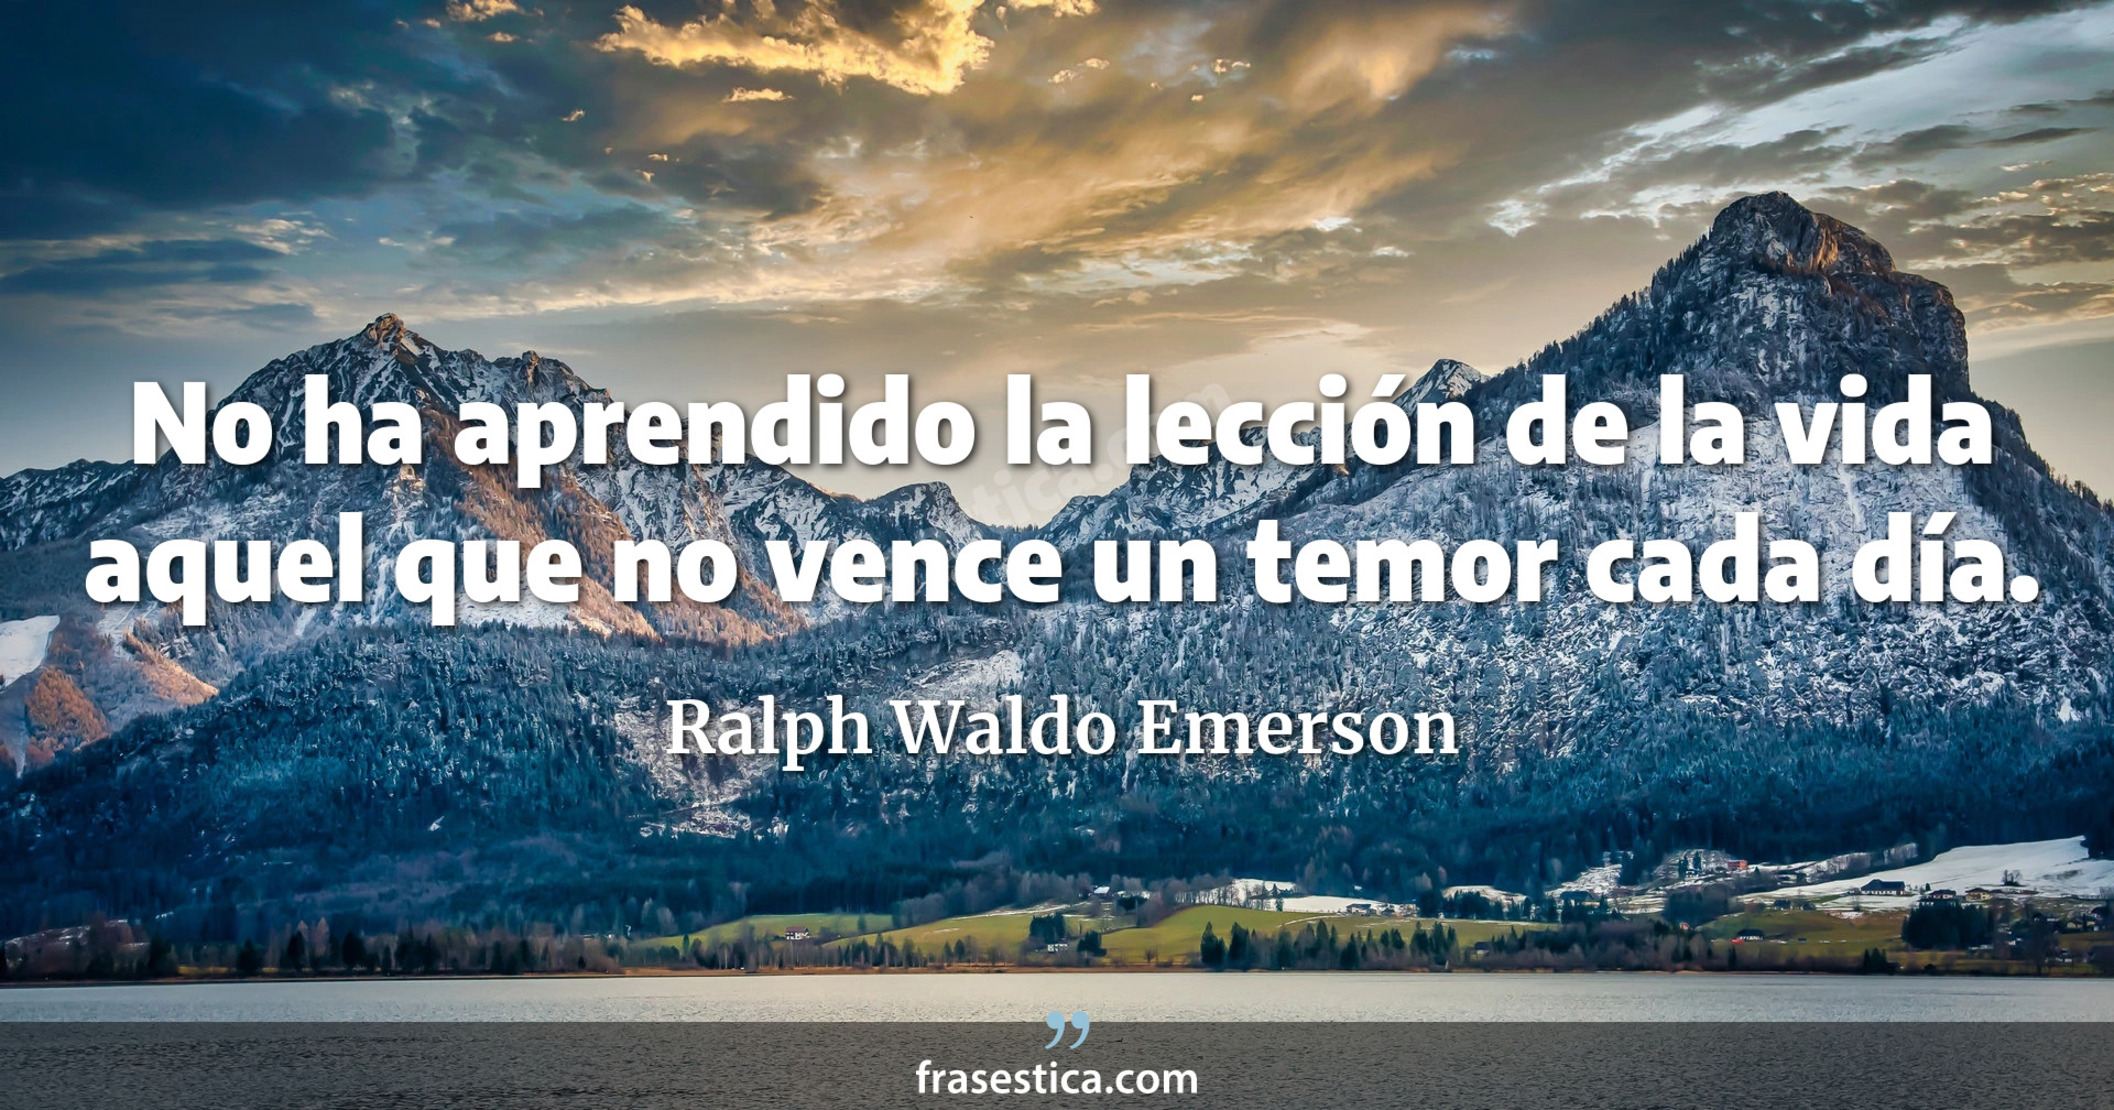 No ha aprendido la lección de la vida aquel que no vence un temor cada día. - Ralph Waldo Emerson